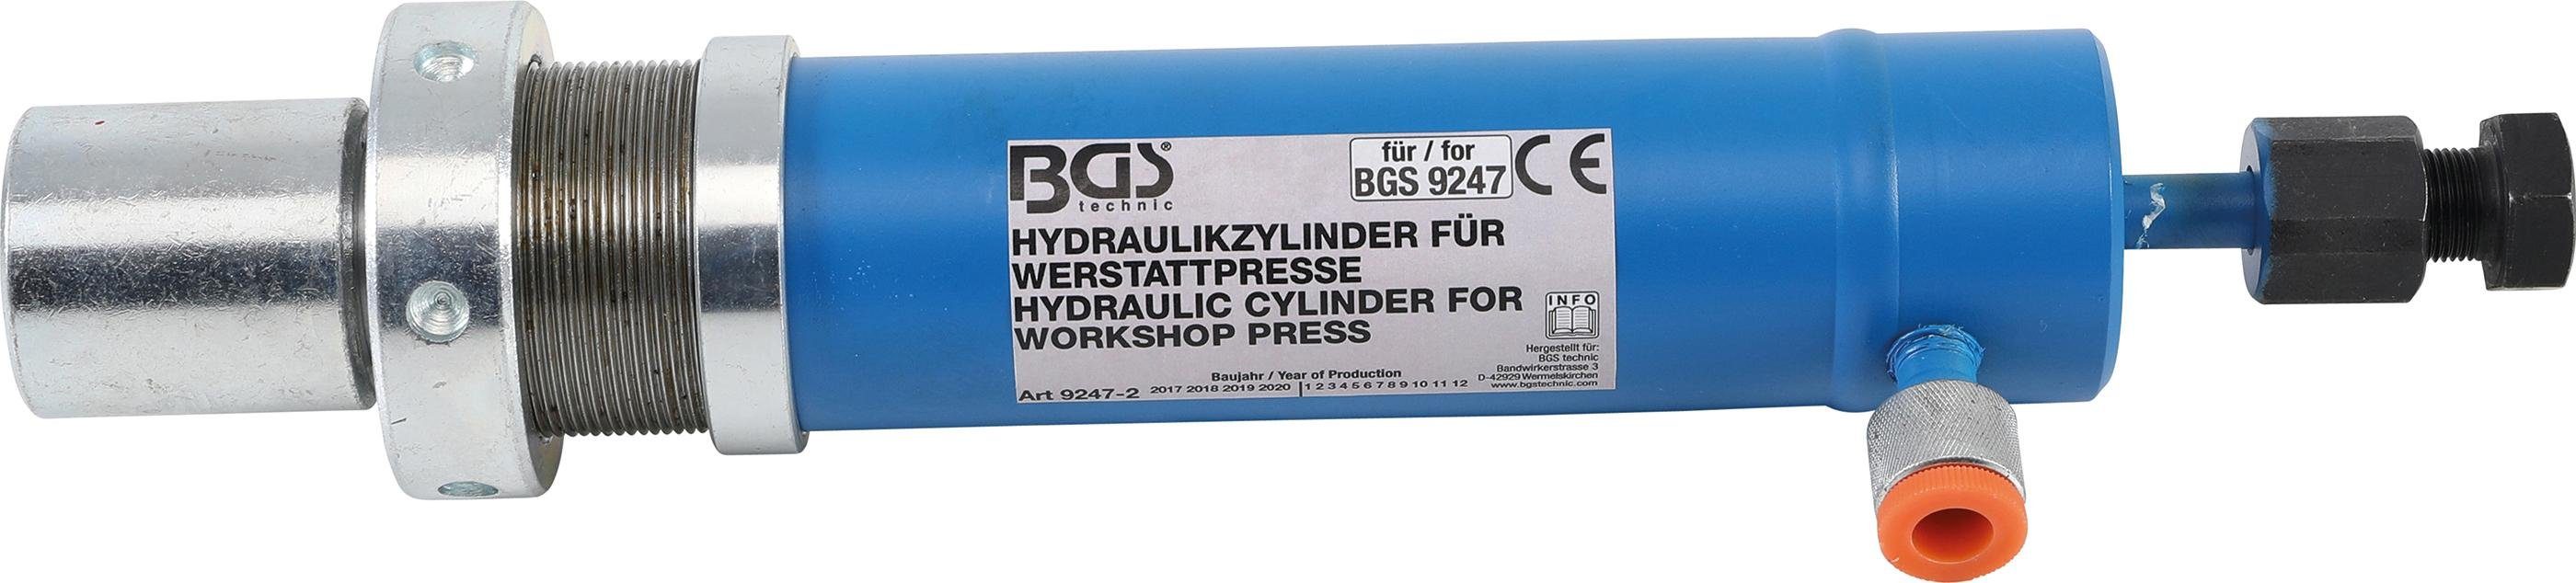 9247 technic Art. BGS Hydraulikzylinder für Werkstattpresse